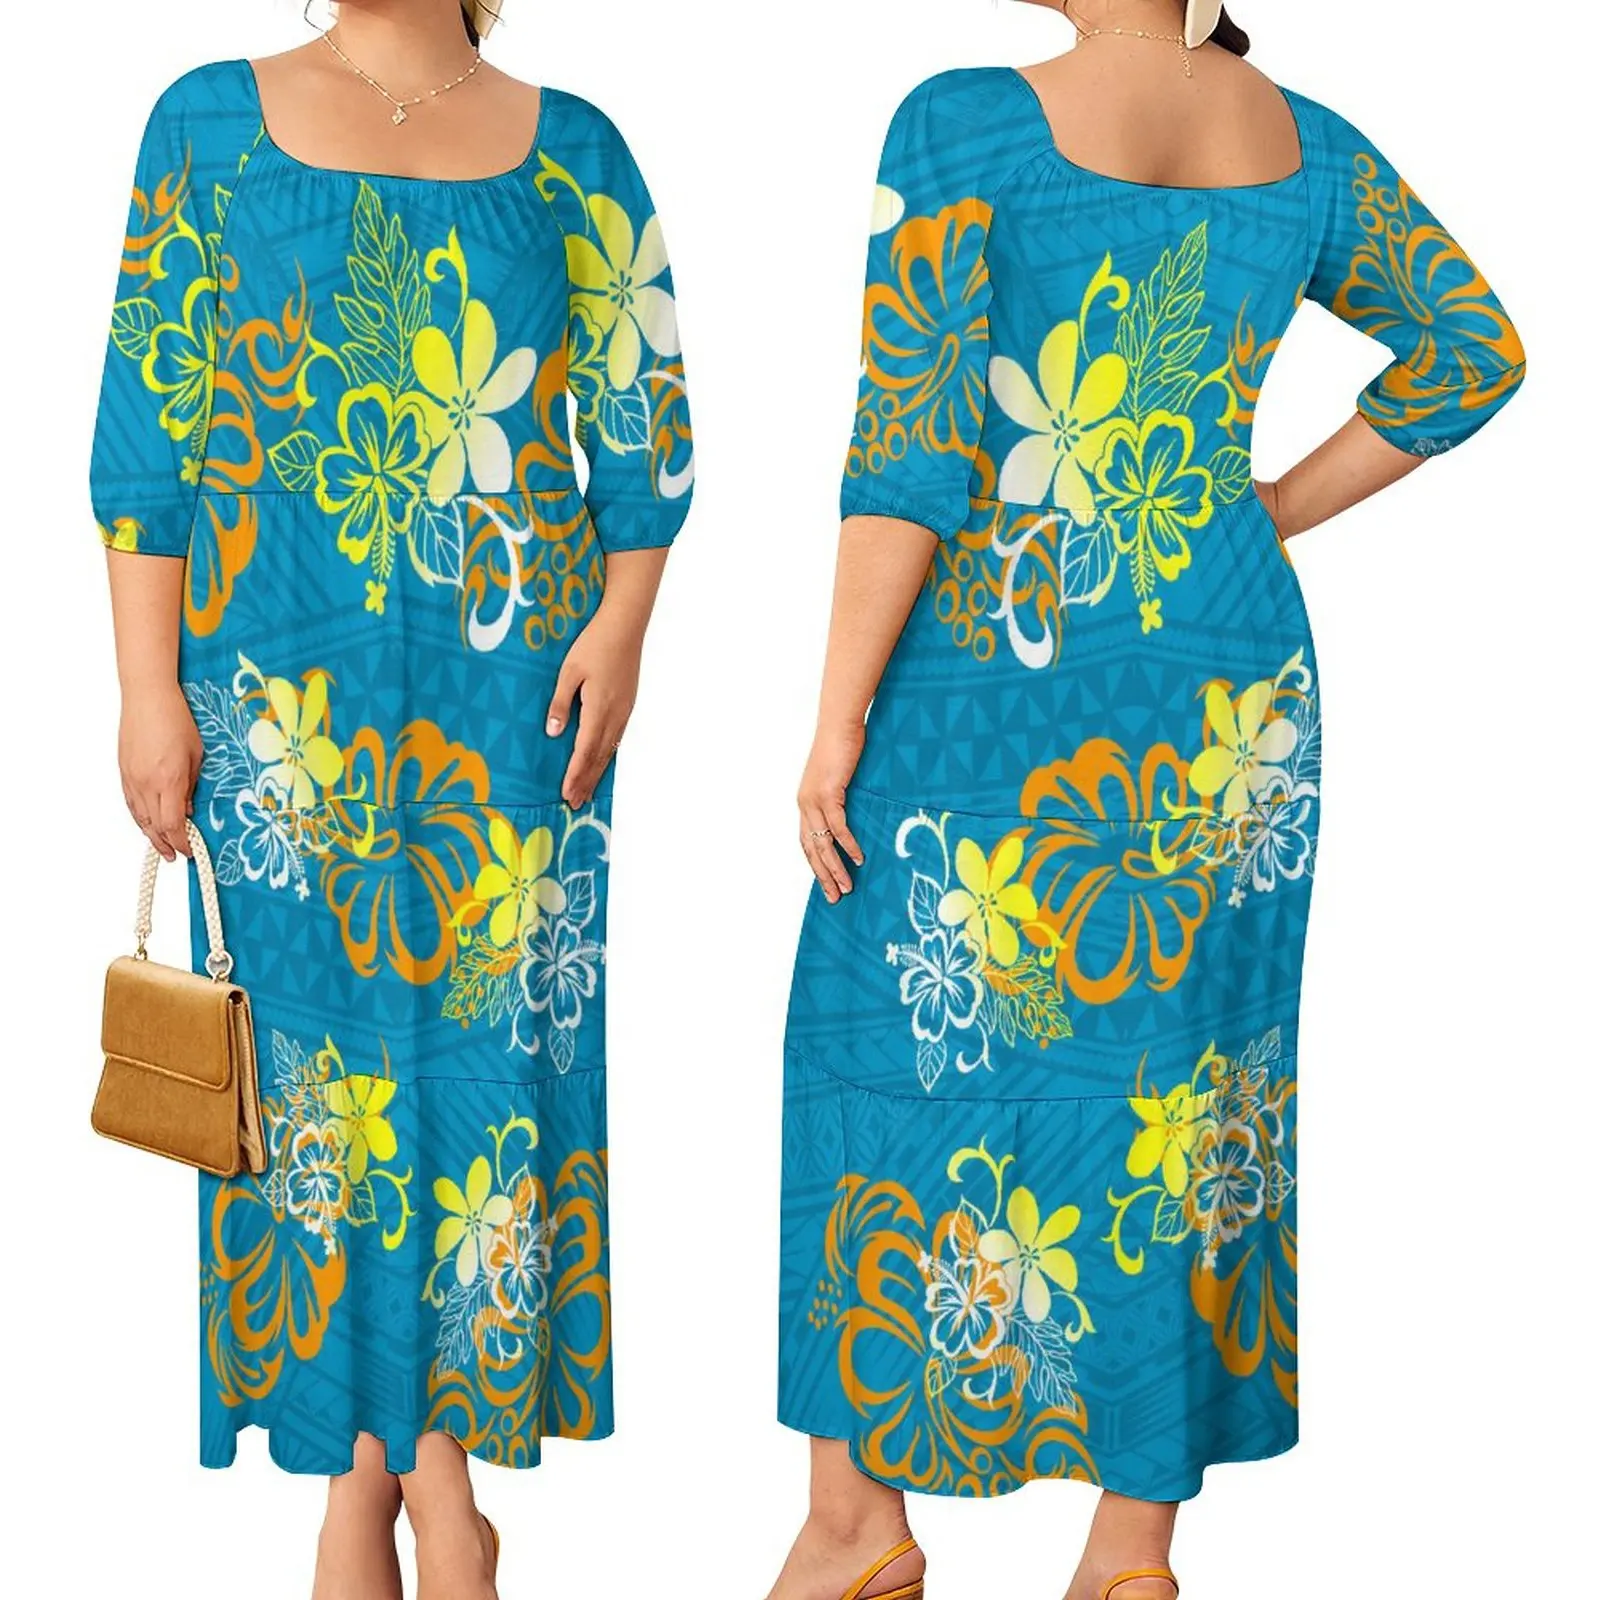 의류 제조 업체 사용자 정의 가을 여성 의류 캐주얼 긴 드레스 섹시한 숙녀 폴리네시아 사모아 럭셔리 디자인 경력 드레스